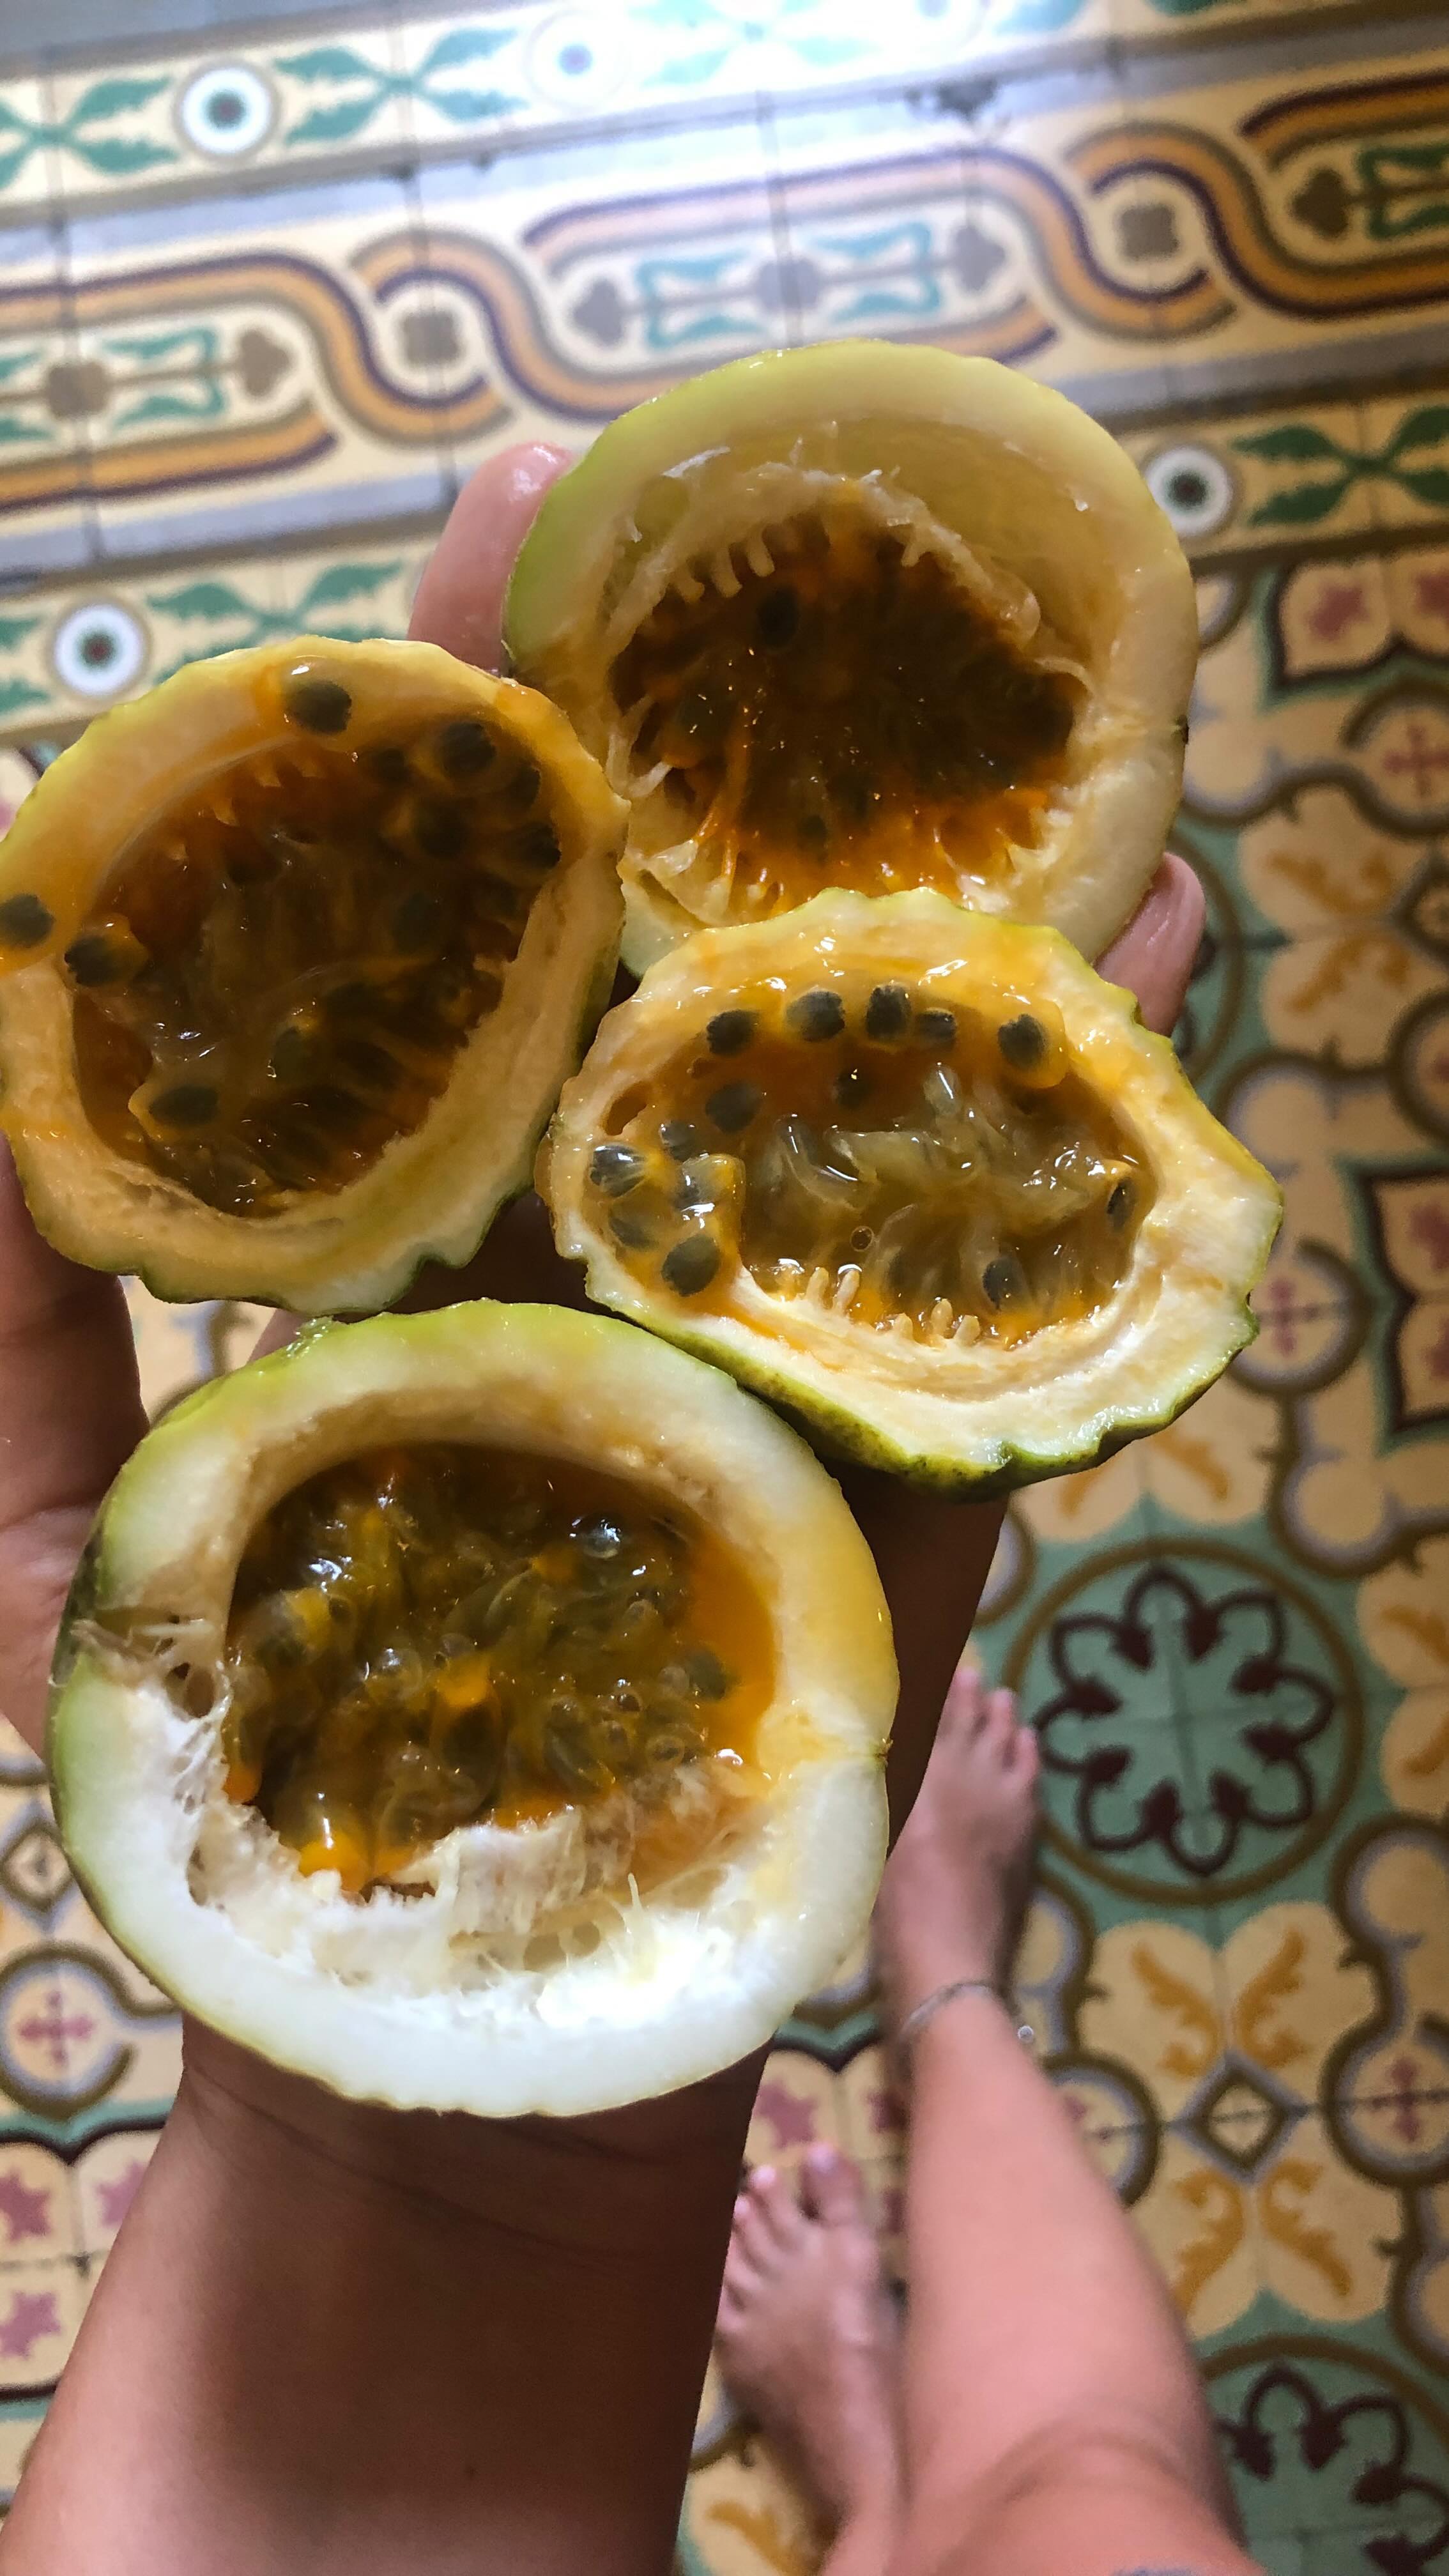 Moja mocna 7 karaibskich owoców i smaków. Czy komuś pociekła ślinka? 😋 
#karaiby #dominikana #dominicanrepublic🇩🇴 #owocetropikalne #tropicalfruit #tropicalfruits #travelblogger #eathealthy #eatandtravel